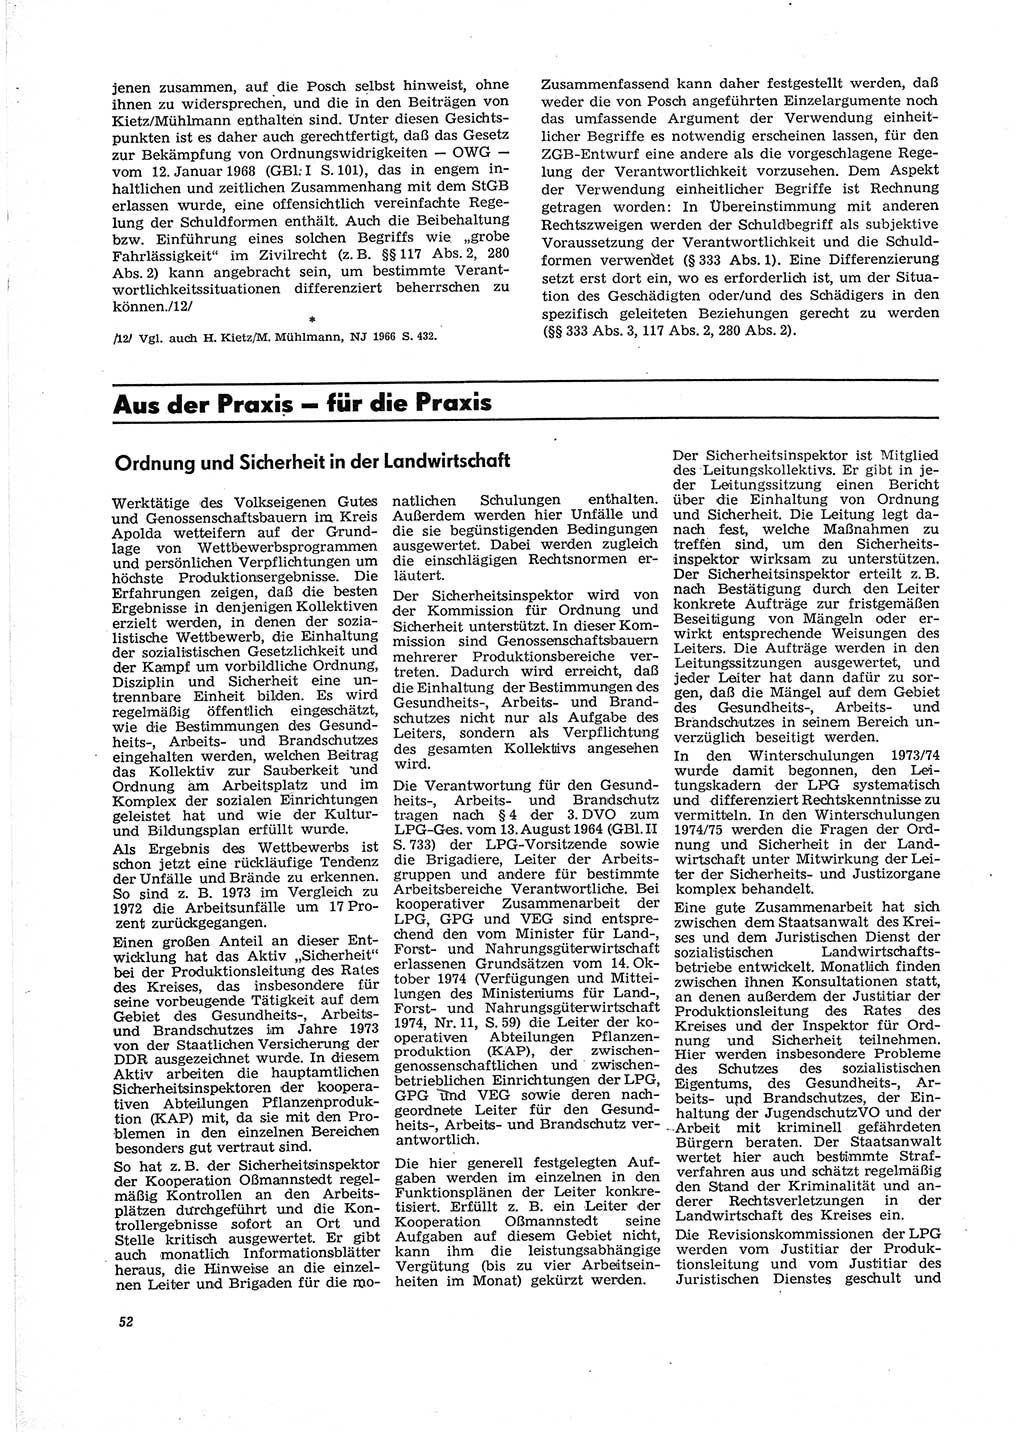 Neue Justiz (NJ), Zeitschrift für Recht und Rechtswissenschaft [Deutsche Demokratische Republik (DDR)], 29. Jahrgang 1975, Seite 52 (NJ DDR 1975, S. 52)